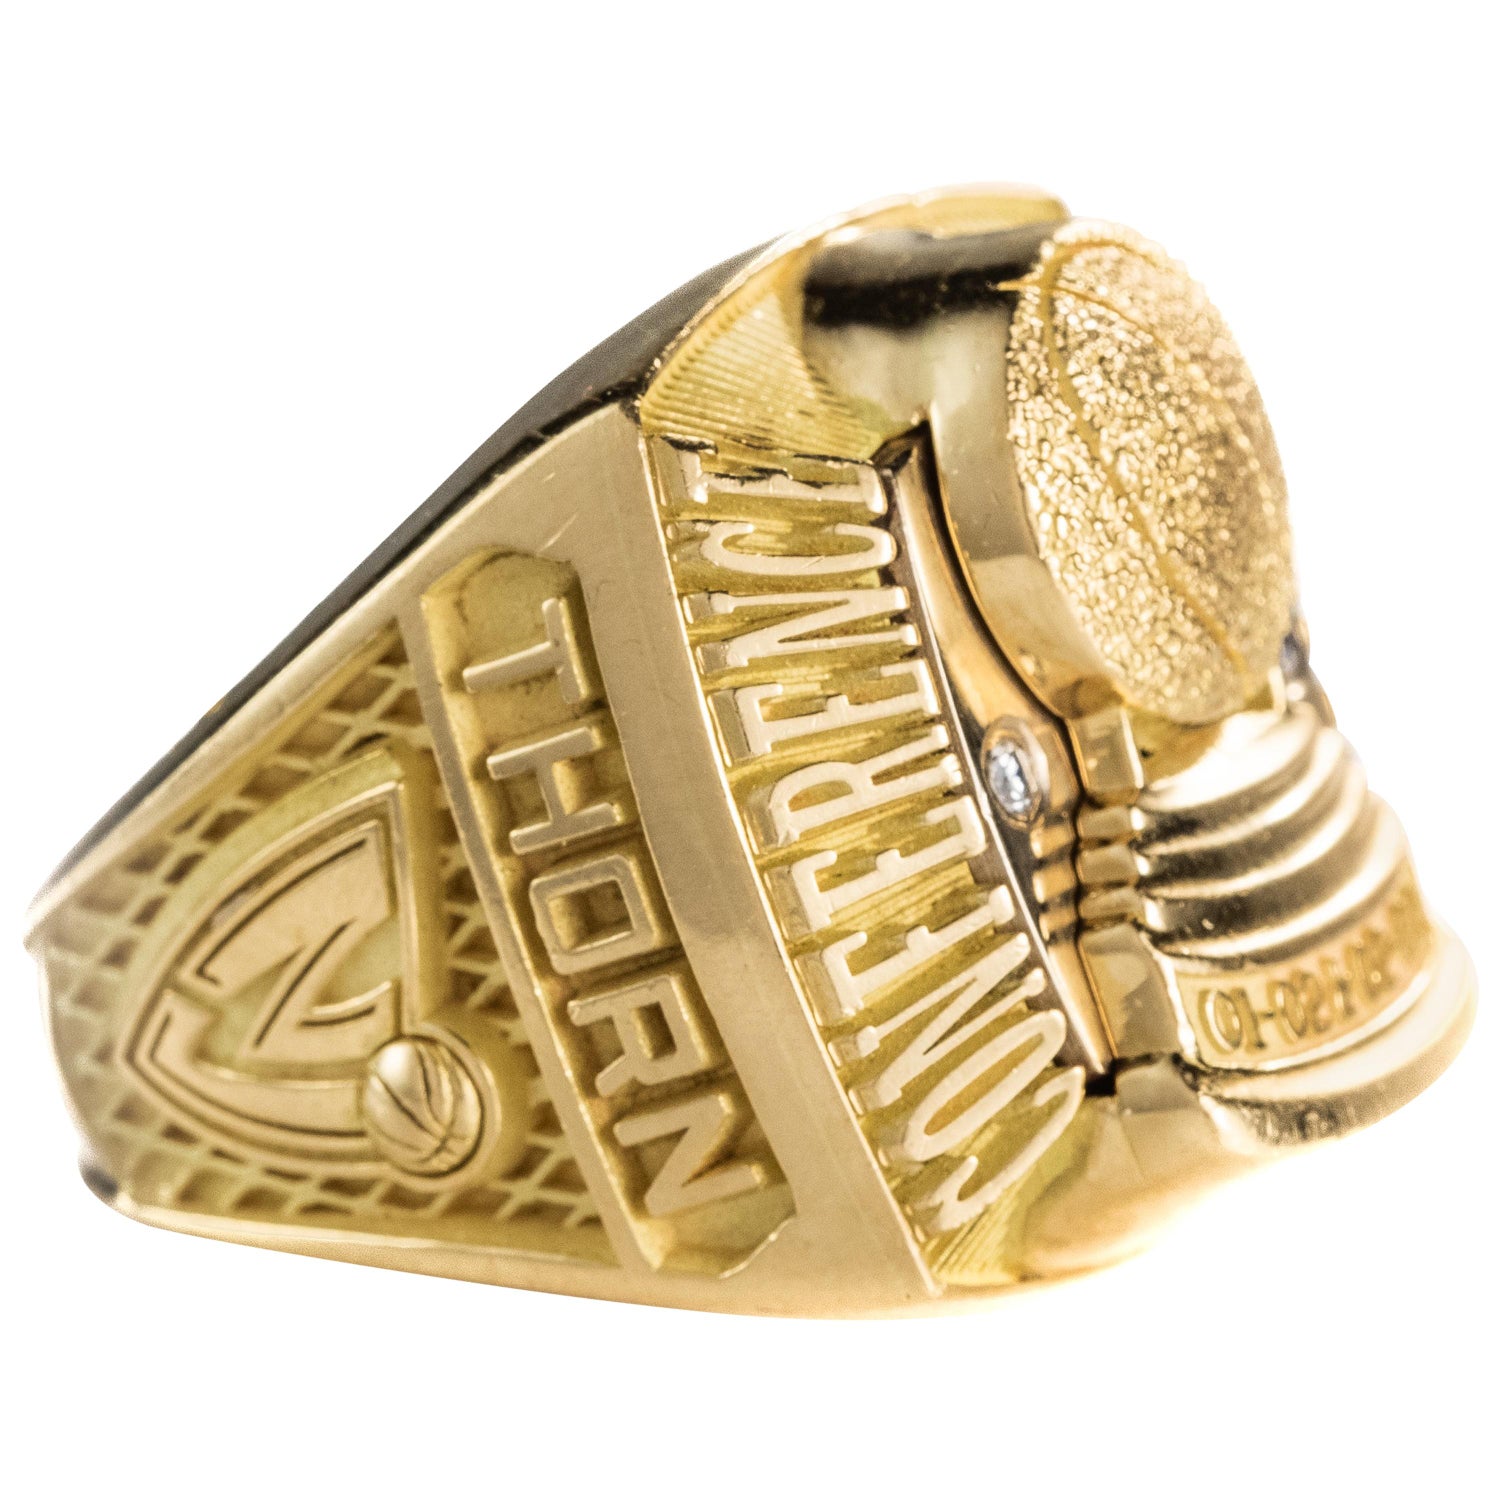 Nba Championship Ring - For Sale on 1stDibs | nba championship rings for  sale, nba rings for sale, nba championship ring for sale